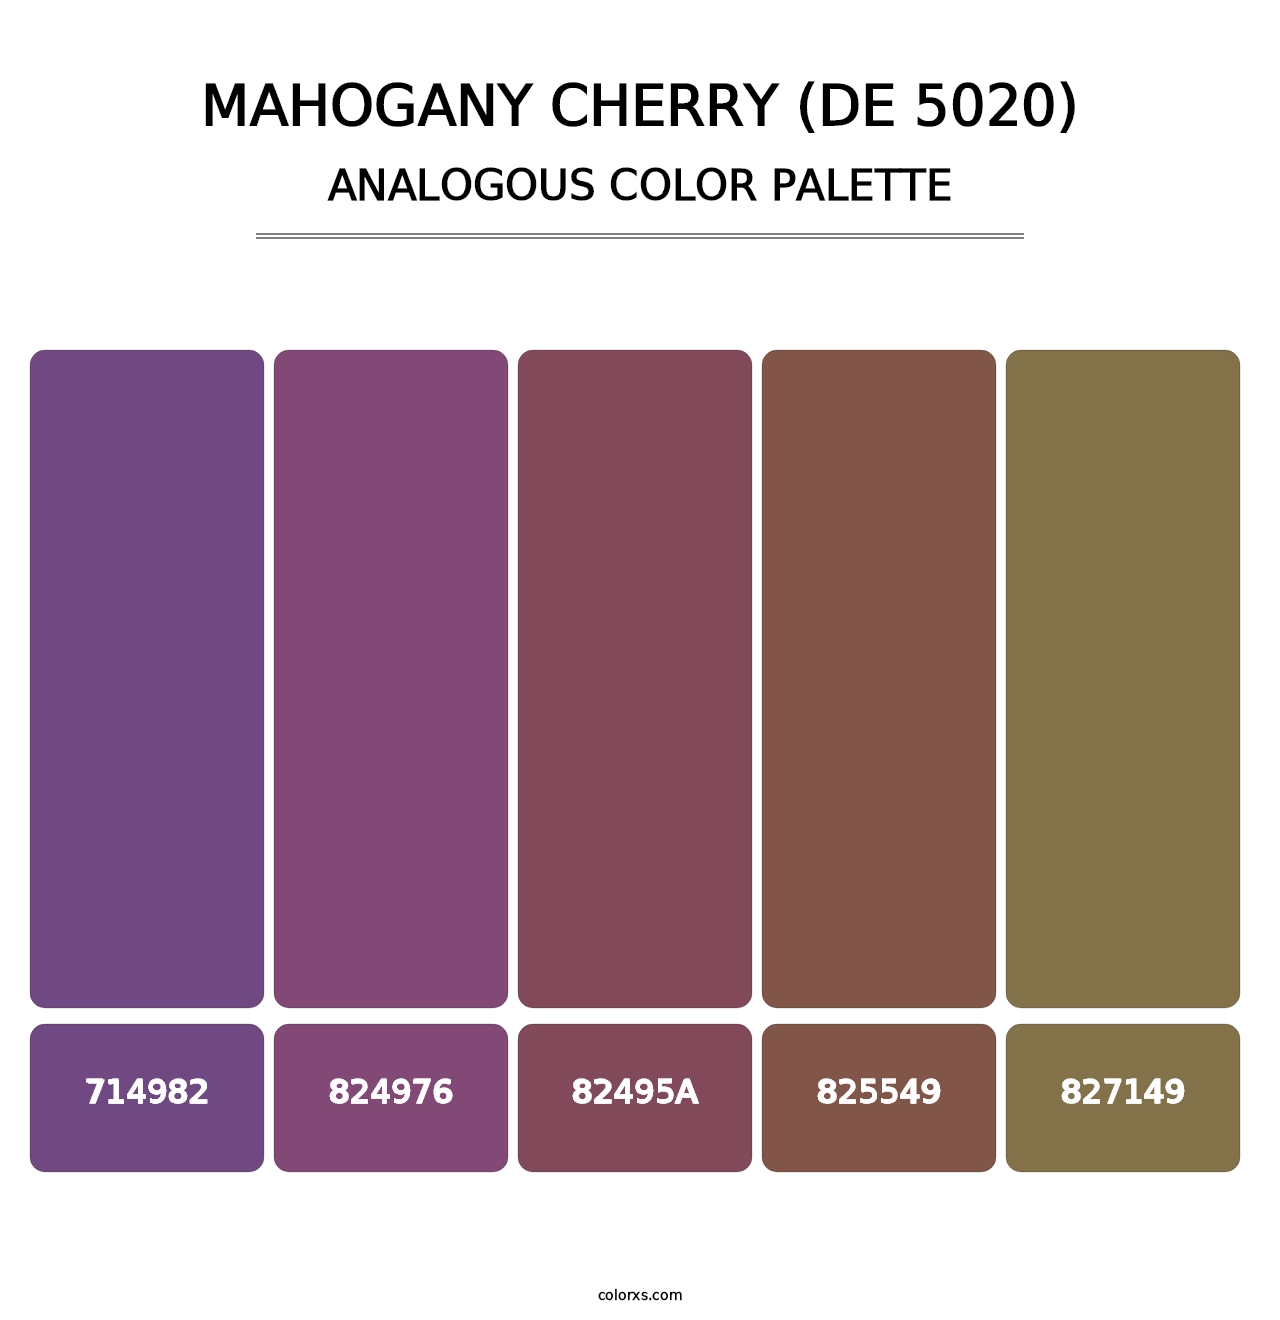 Mahogany Cherry (DE 5020) - Analogous Color Palette